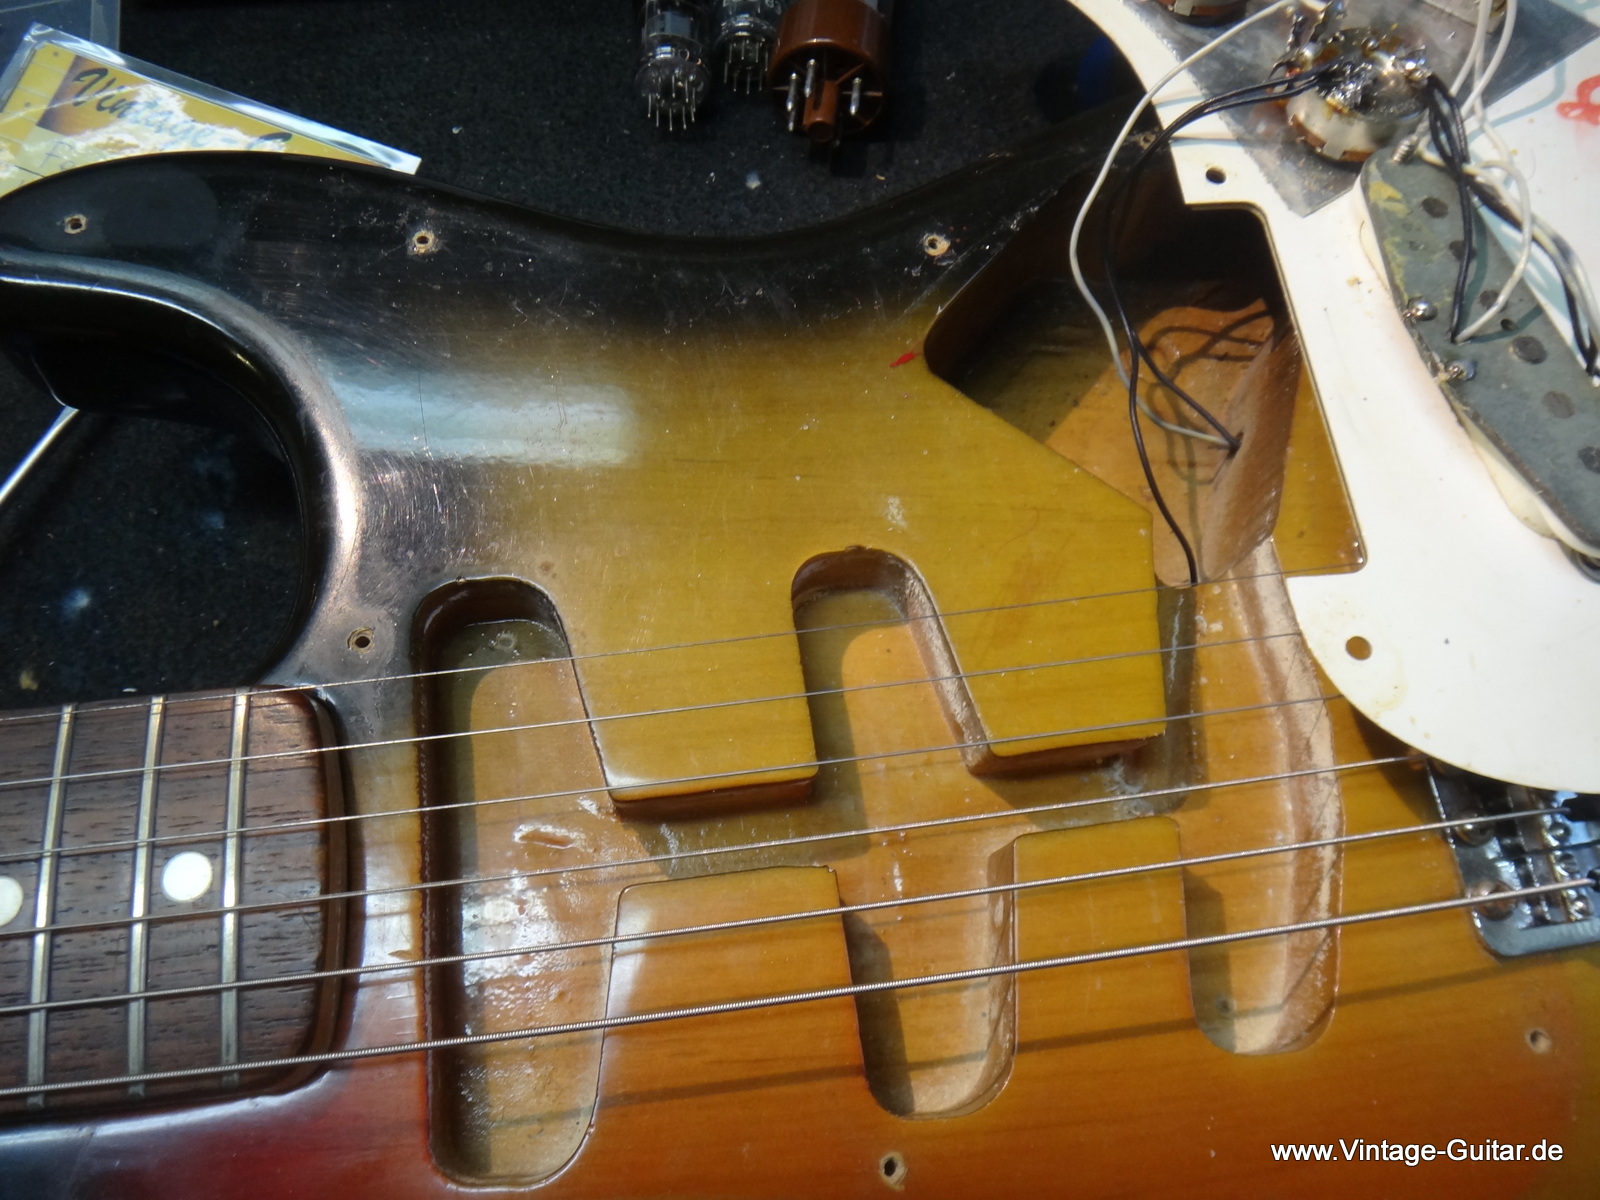 Fender-Stratocaster-1972-sunburst-inside-005.JPG